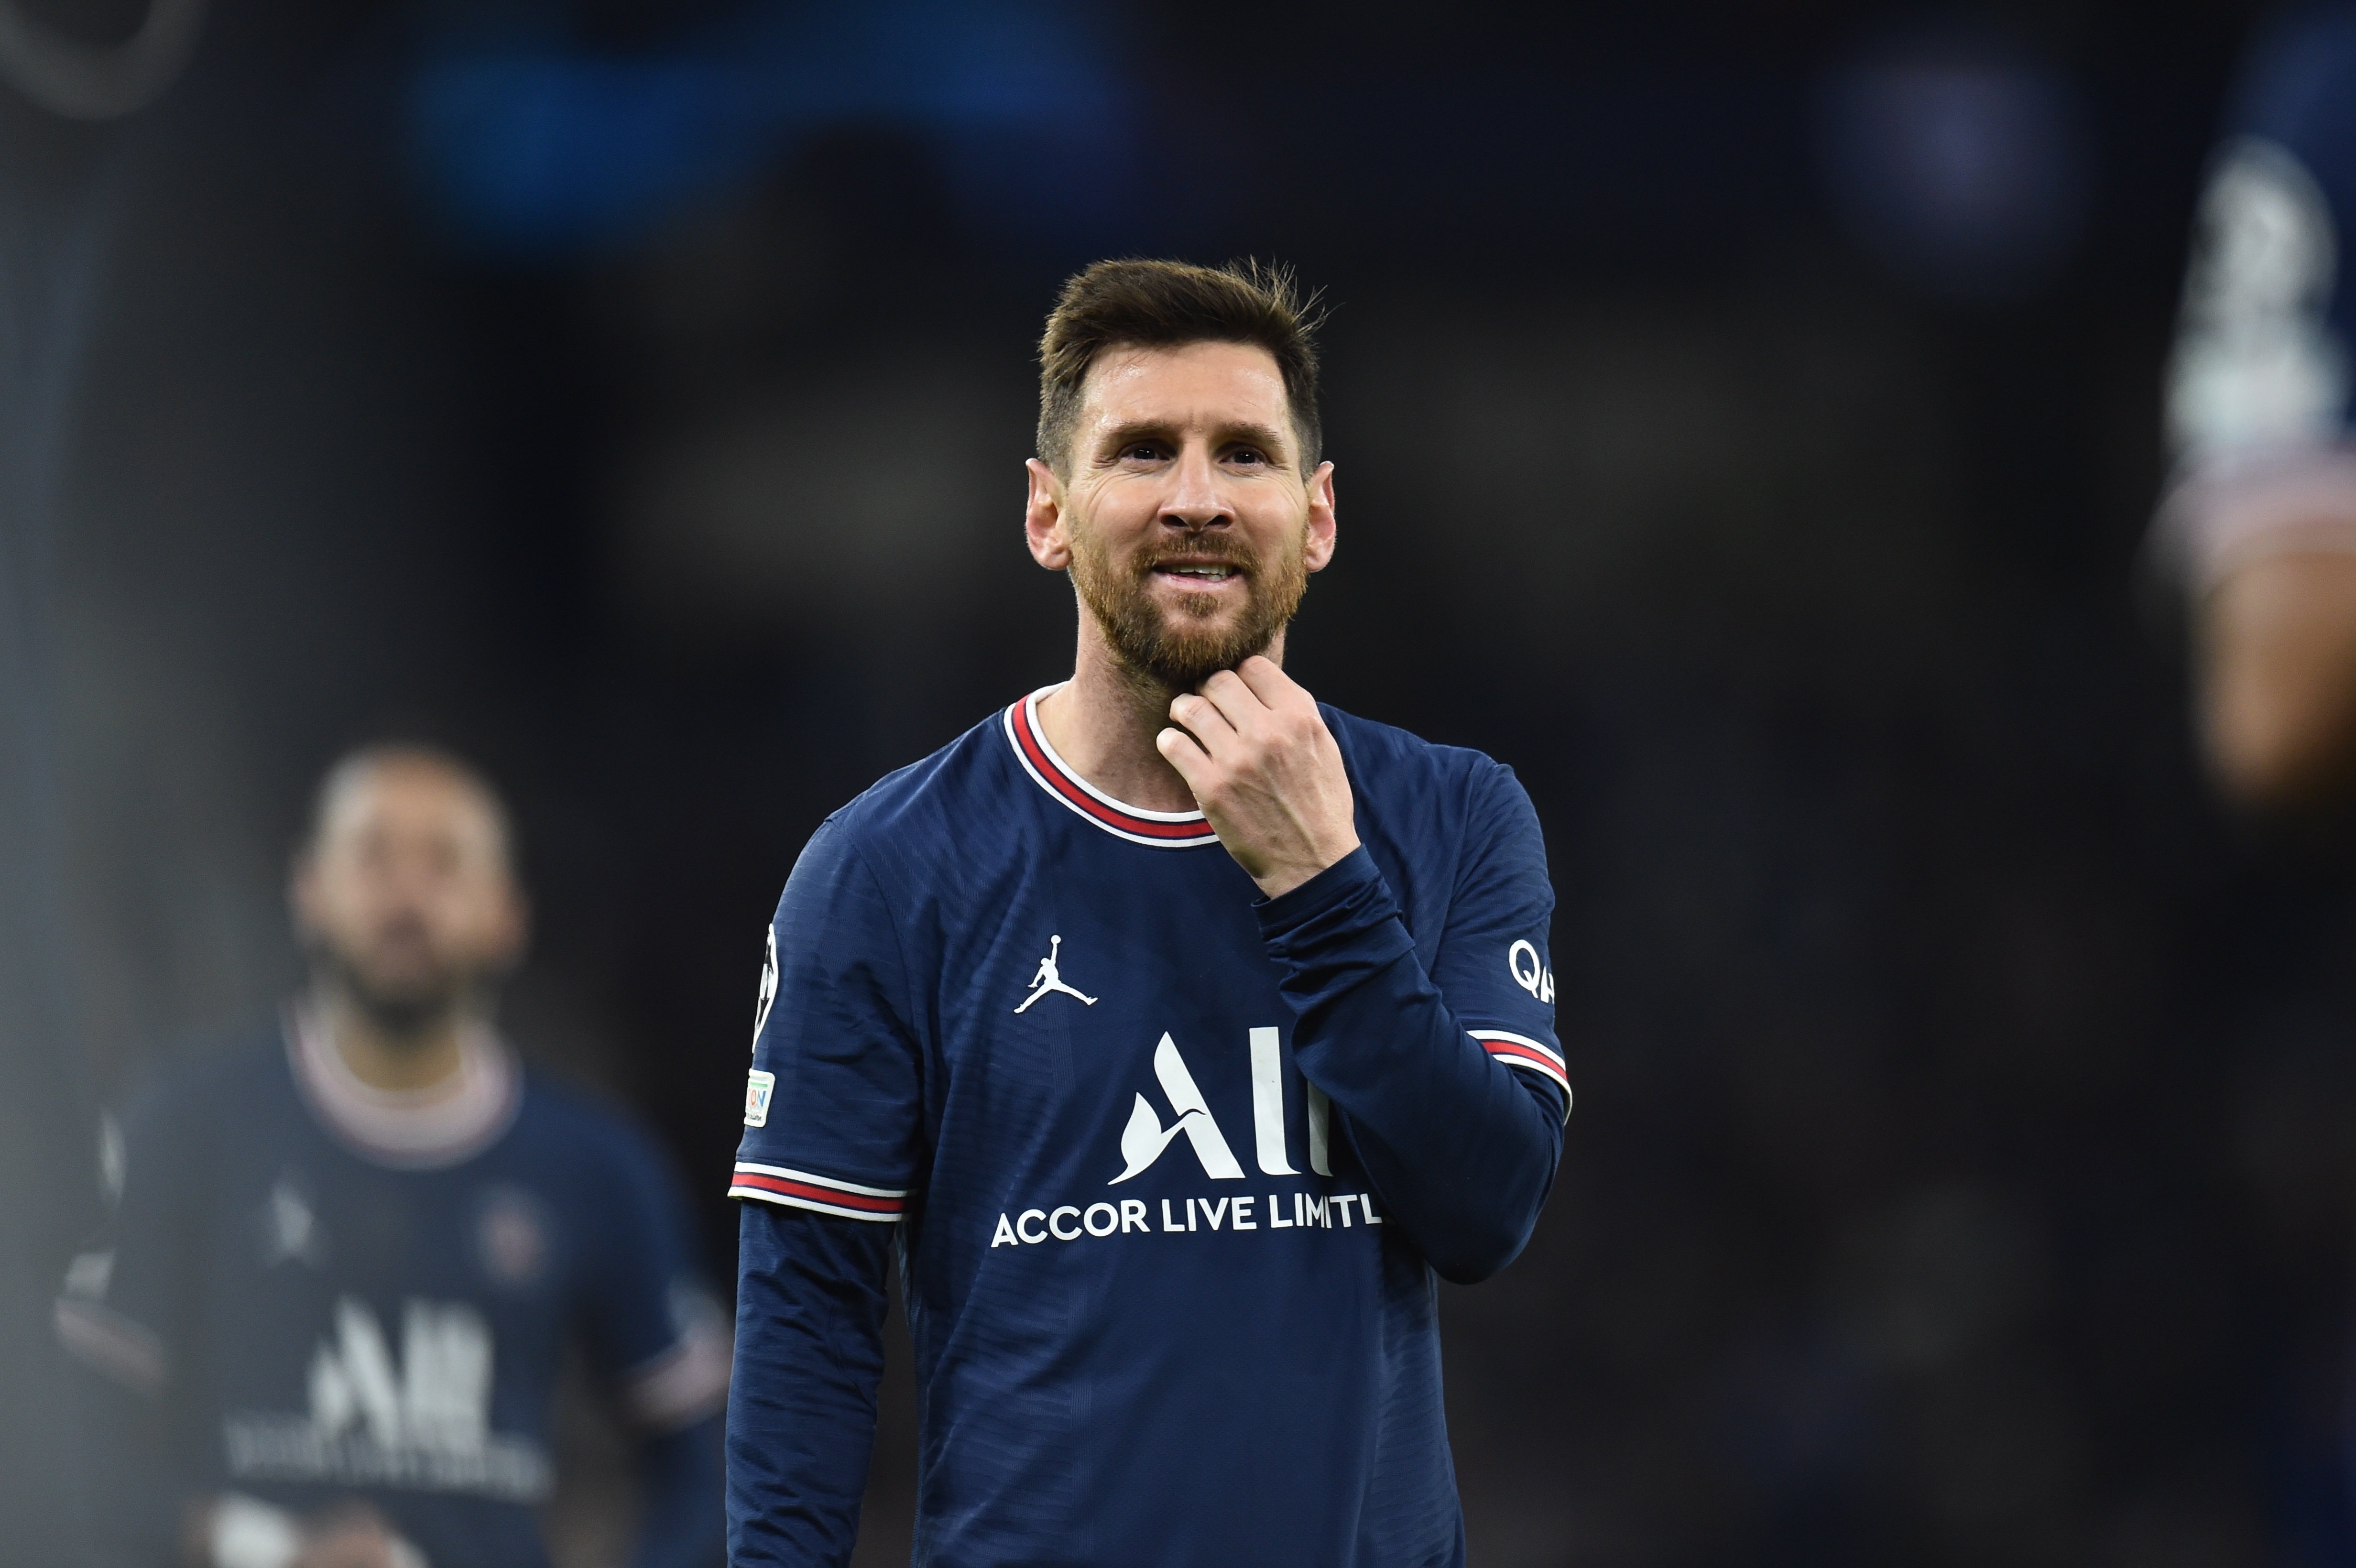 L'enemic de Messi al PSG i la foto que està generant polèmica: no es parlen ni es miren a la cara